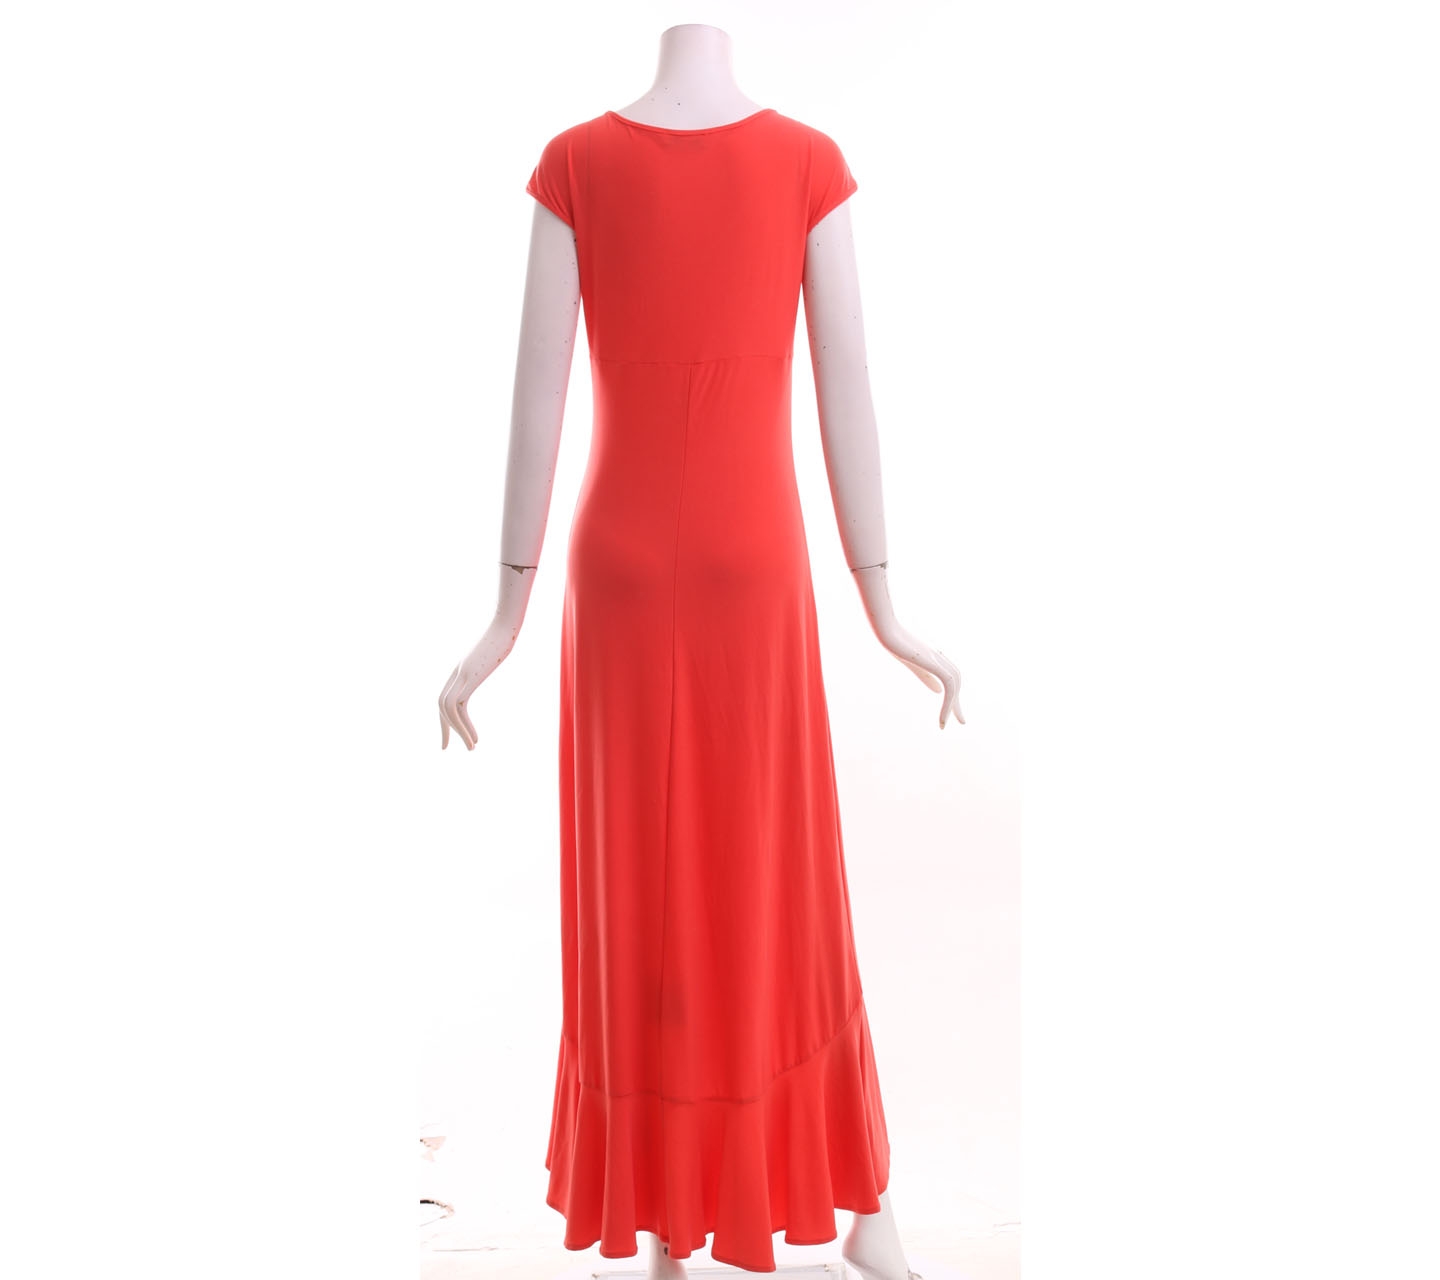 Farah Khan Peach Long Dress